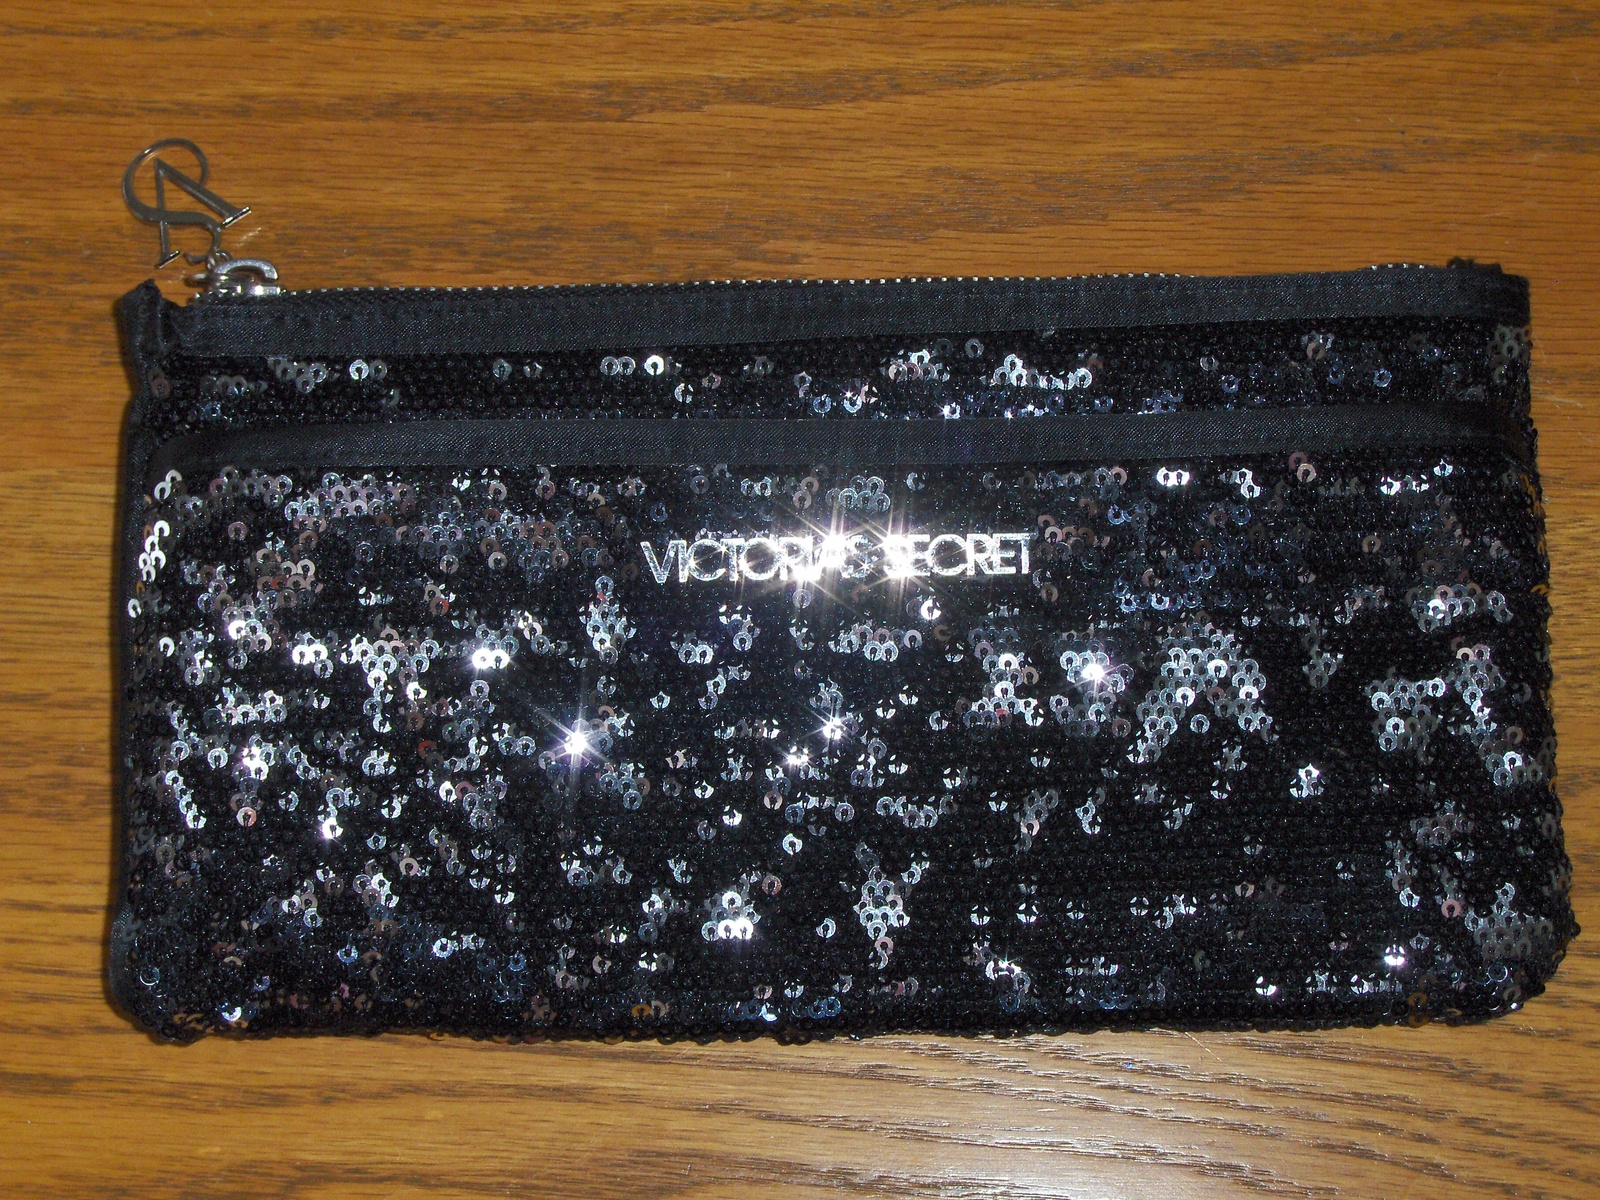 Victoria's Secret Black Sequin Bling Reversible Clutch Purse 2012 Makeup Bag  - $25.00